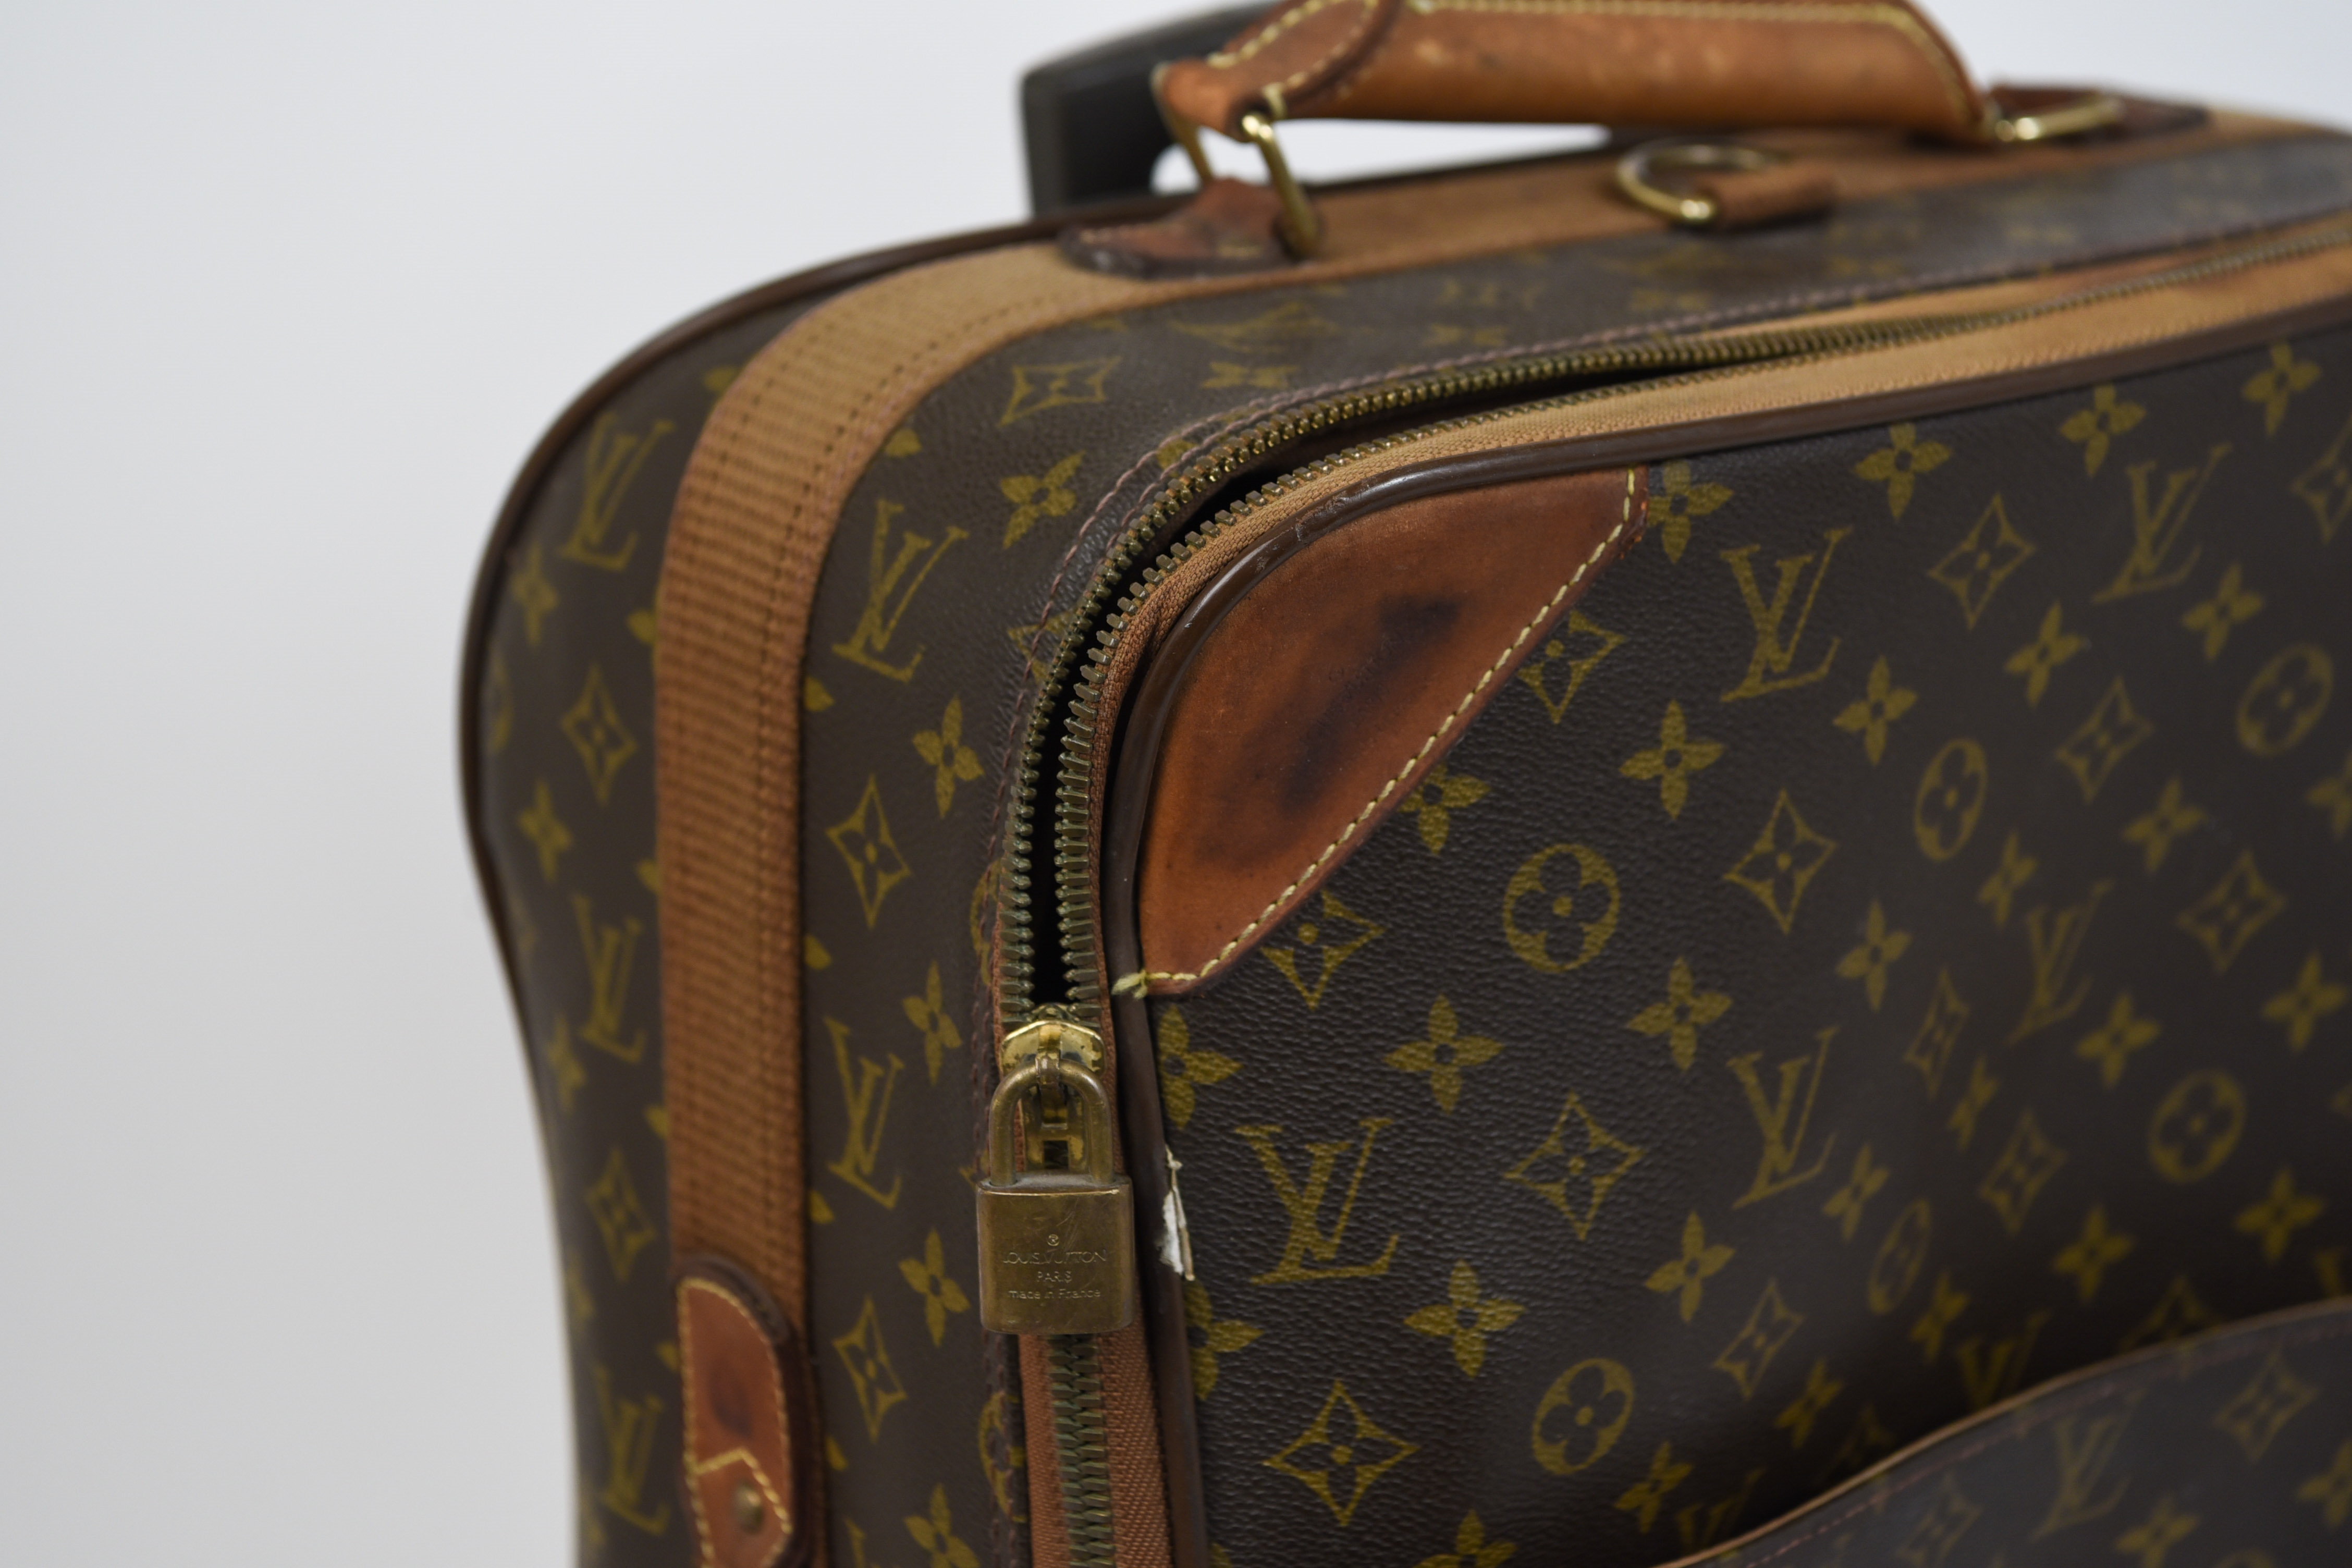 Louis Vuitton  Dimensions: (Suitcase) H 17 x W 25 Condition